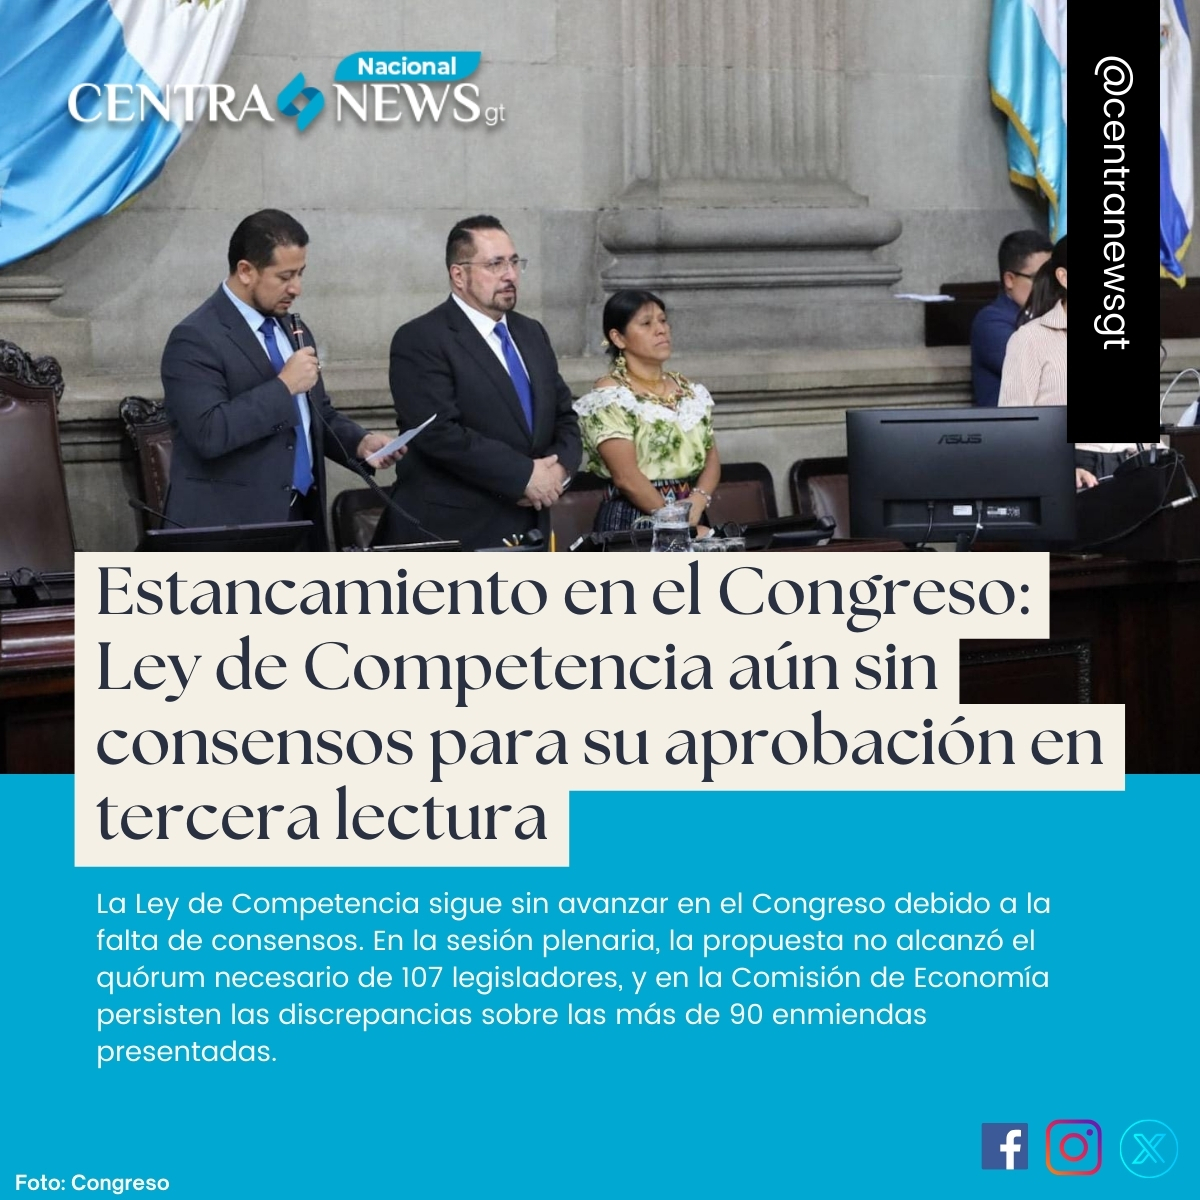 ❌ 📖 #LeyDeCompetencia | Estancamiento en el Congreso: Ley de Competencia aún sin consensos para su aprobación en tercera lectura.
 
📝 Entérate aquí: lc.cx/FMJo7l

#AHORA #URGENTE #PorSiNoLoViste @CongresoGuate